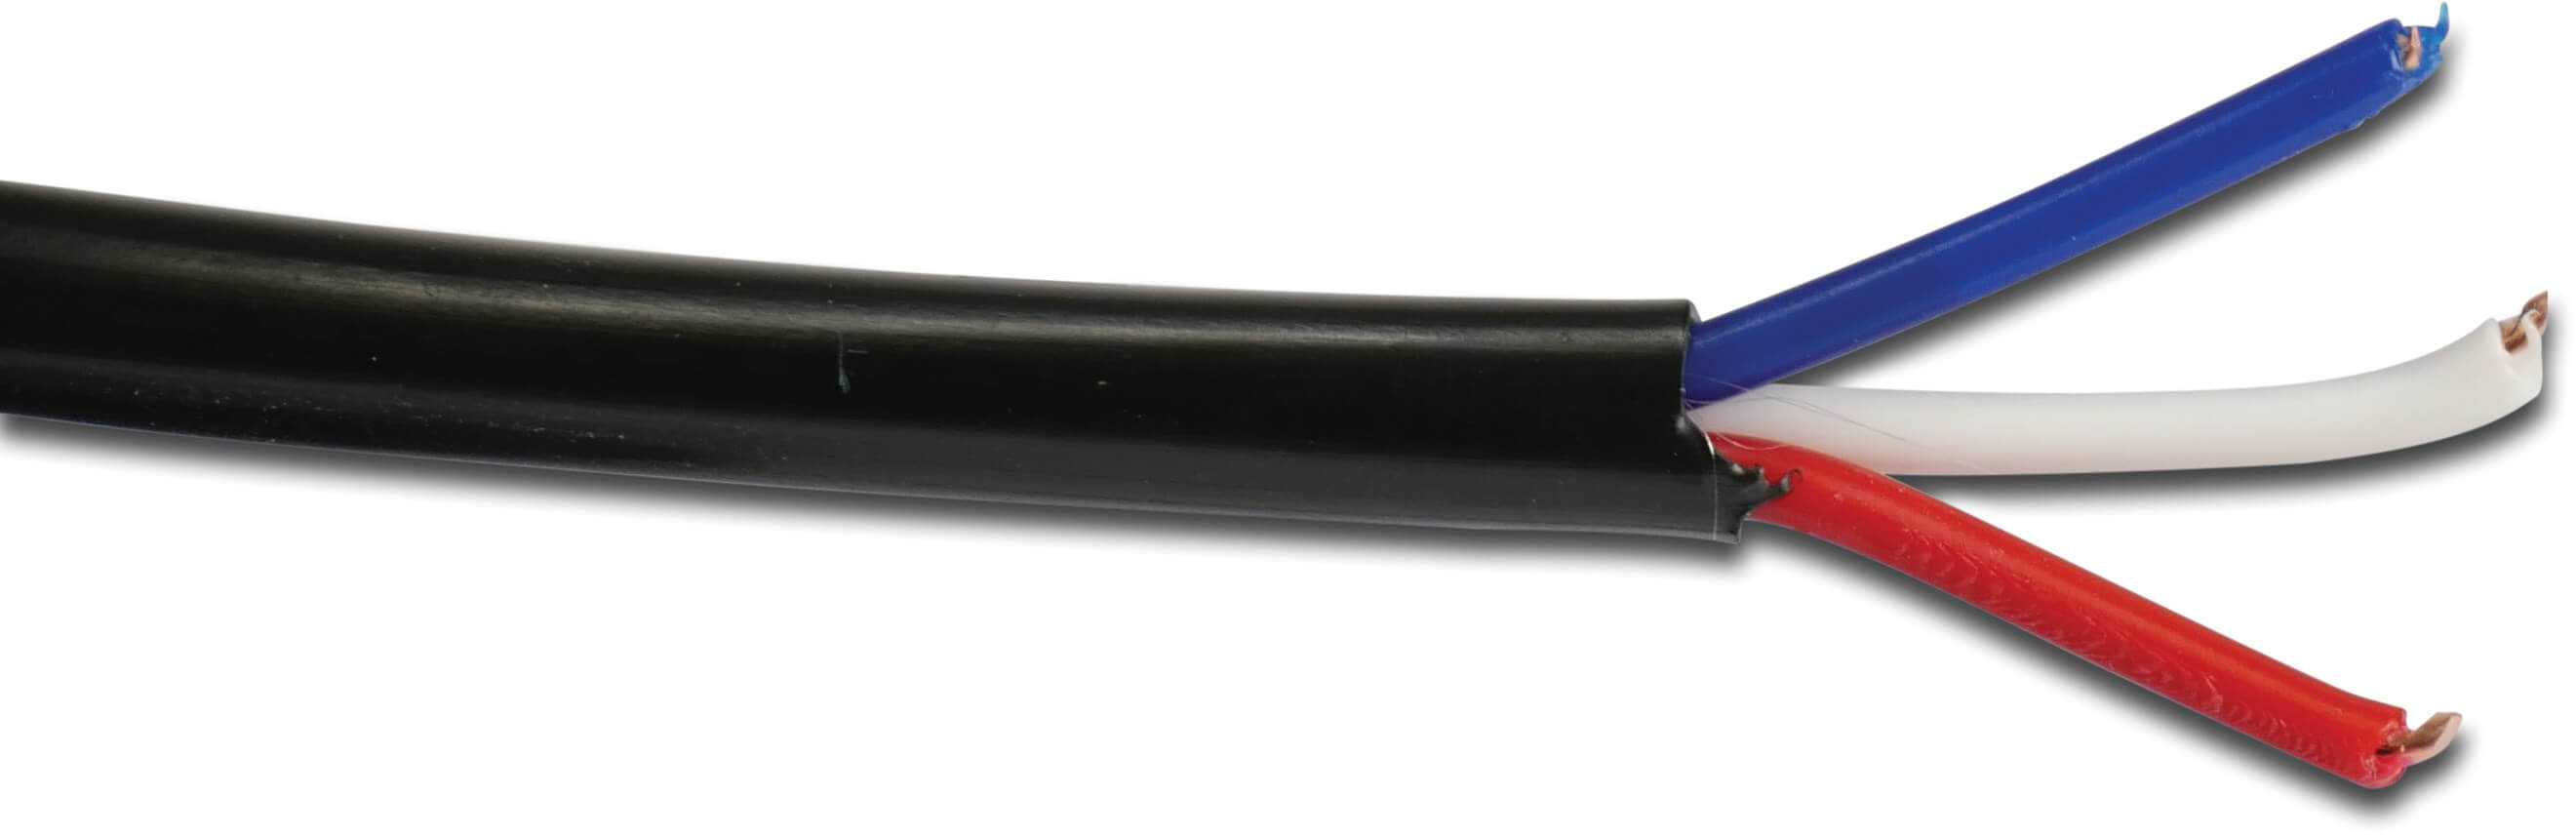 Elektrisk kabel kobber sort 50m type 3 x 0,75mm² 3 colour coded conductors